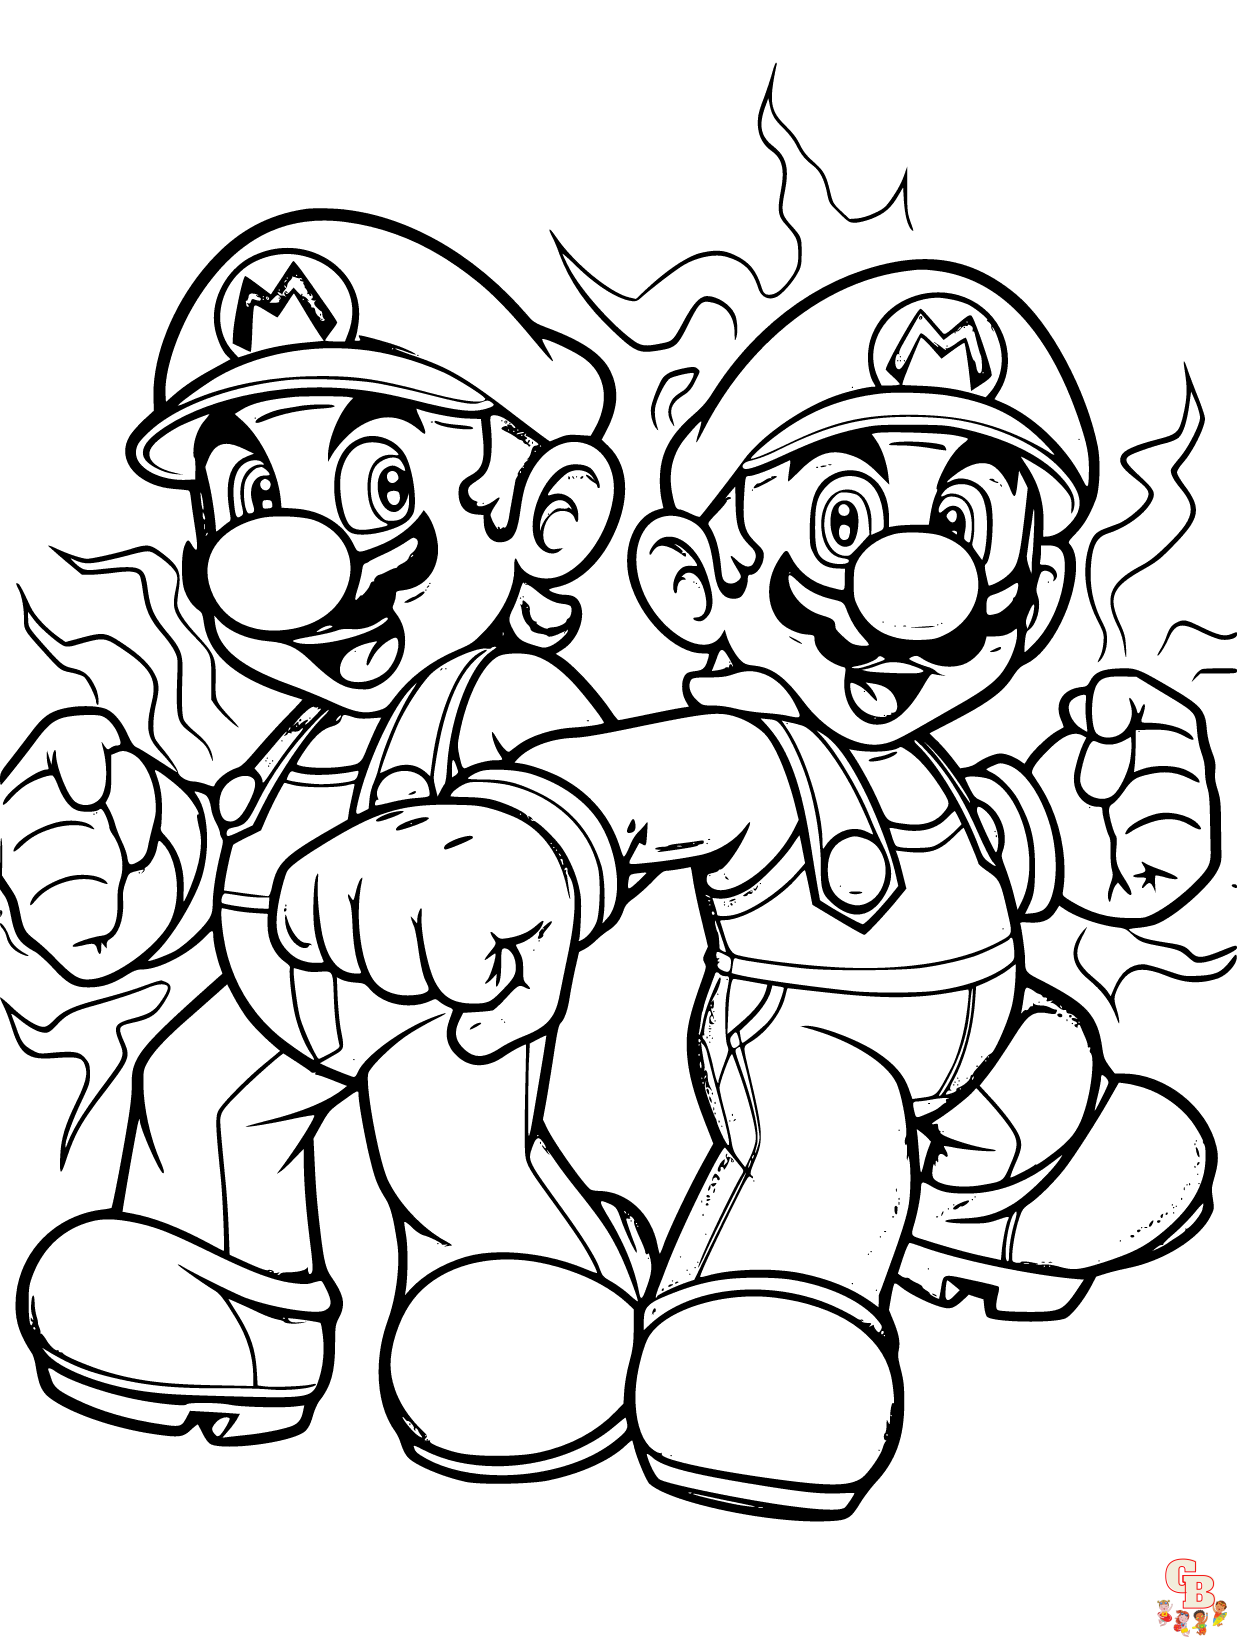 Mario and luigi Coloring 6